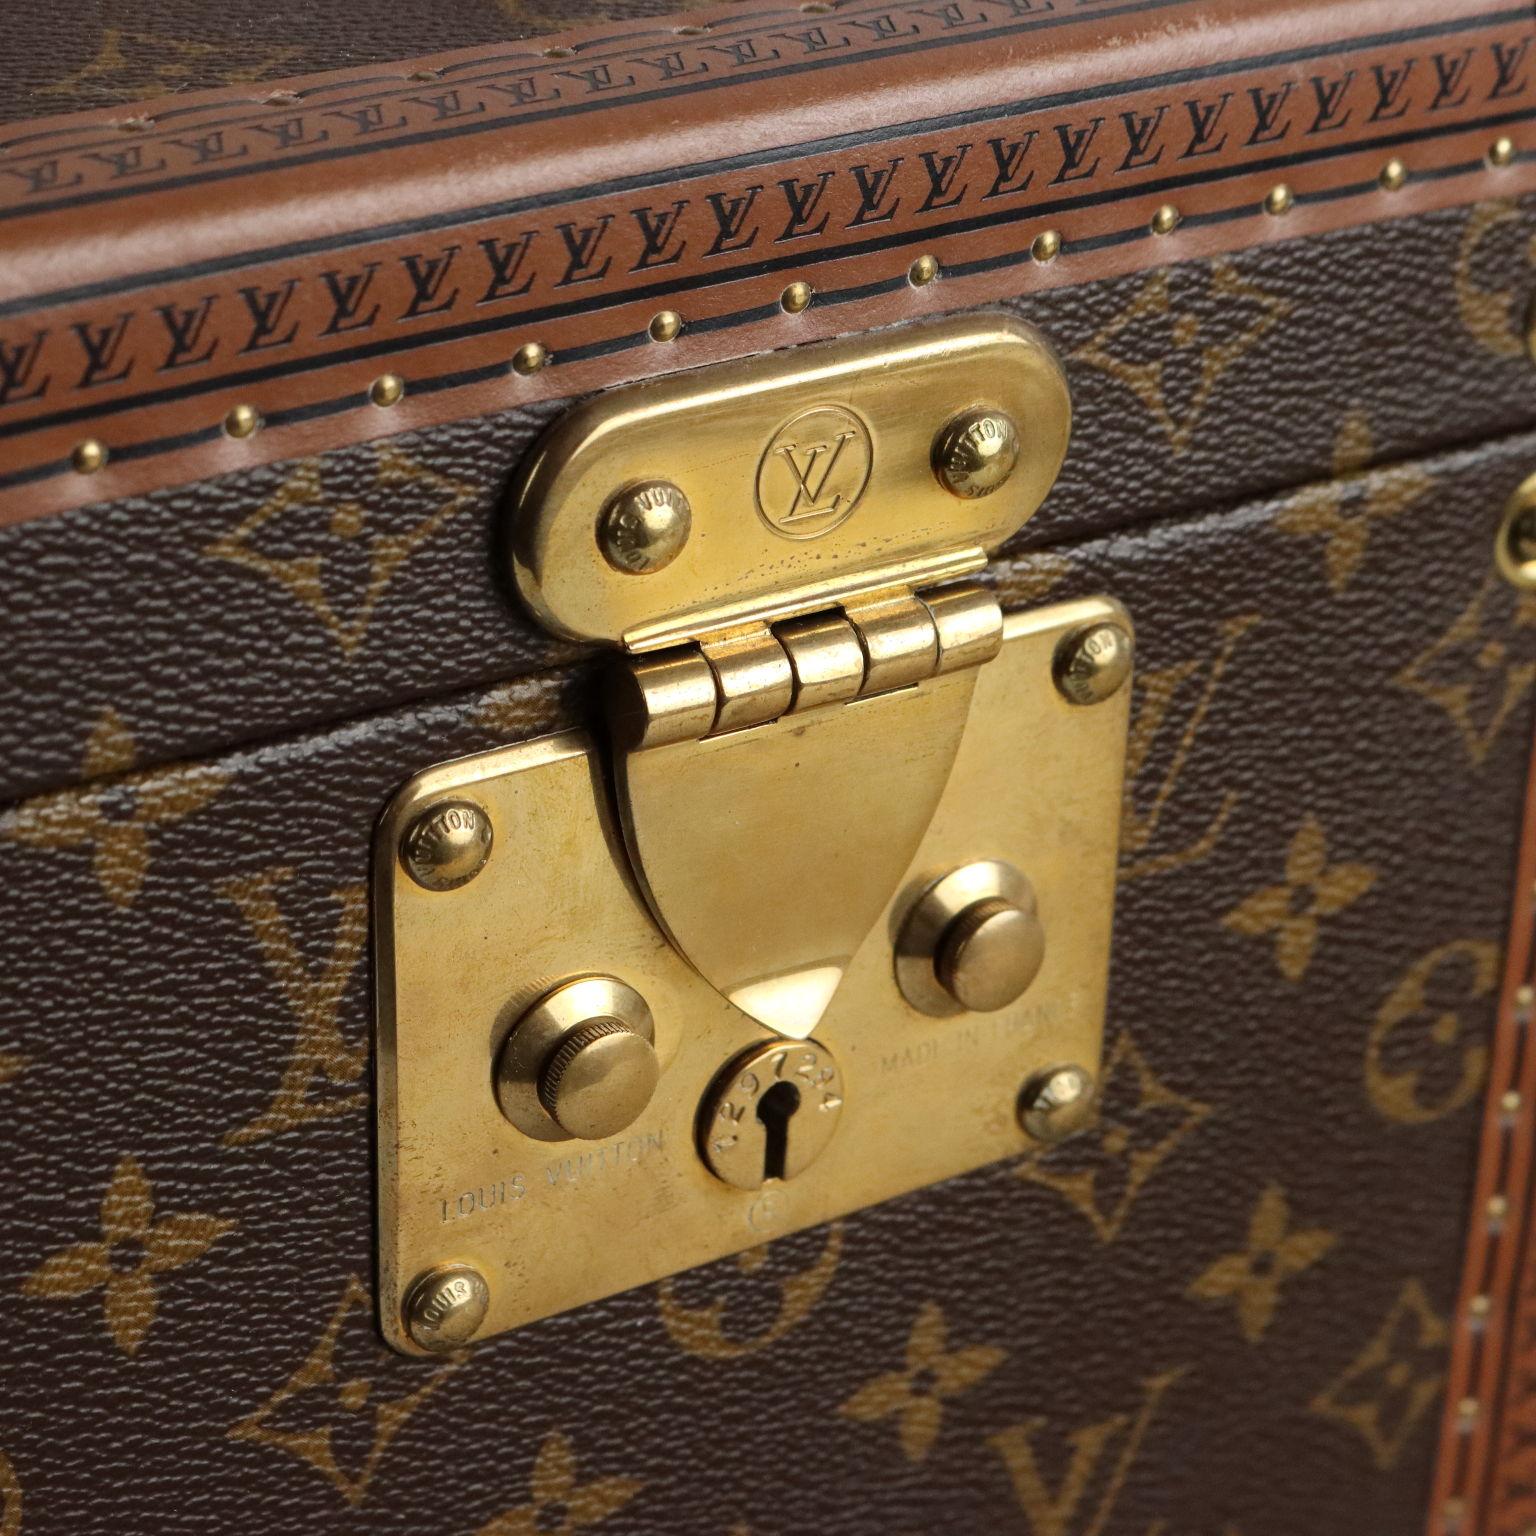 Louis Vuitton Kosmetiktasche (Boîte à flacons), bezogen mit Monogram-Leinwand. Die Beschläge sind aus Messing, die Nägel sind eingebrannt. Innen mit Spiegelkasten, Lederschlaufen für Flaschen und Originaletikett mit eindeutiger Produktnummer